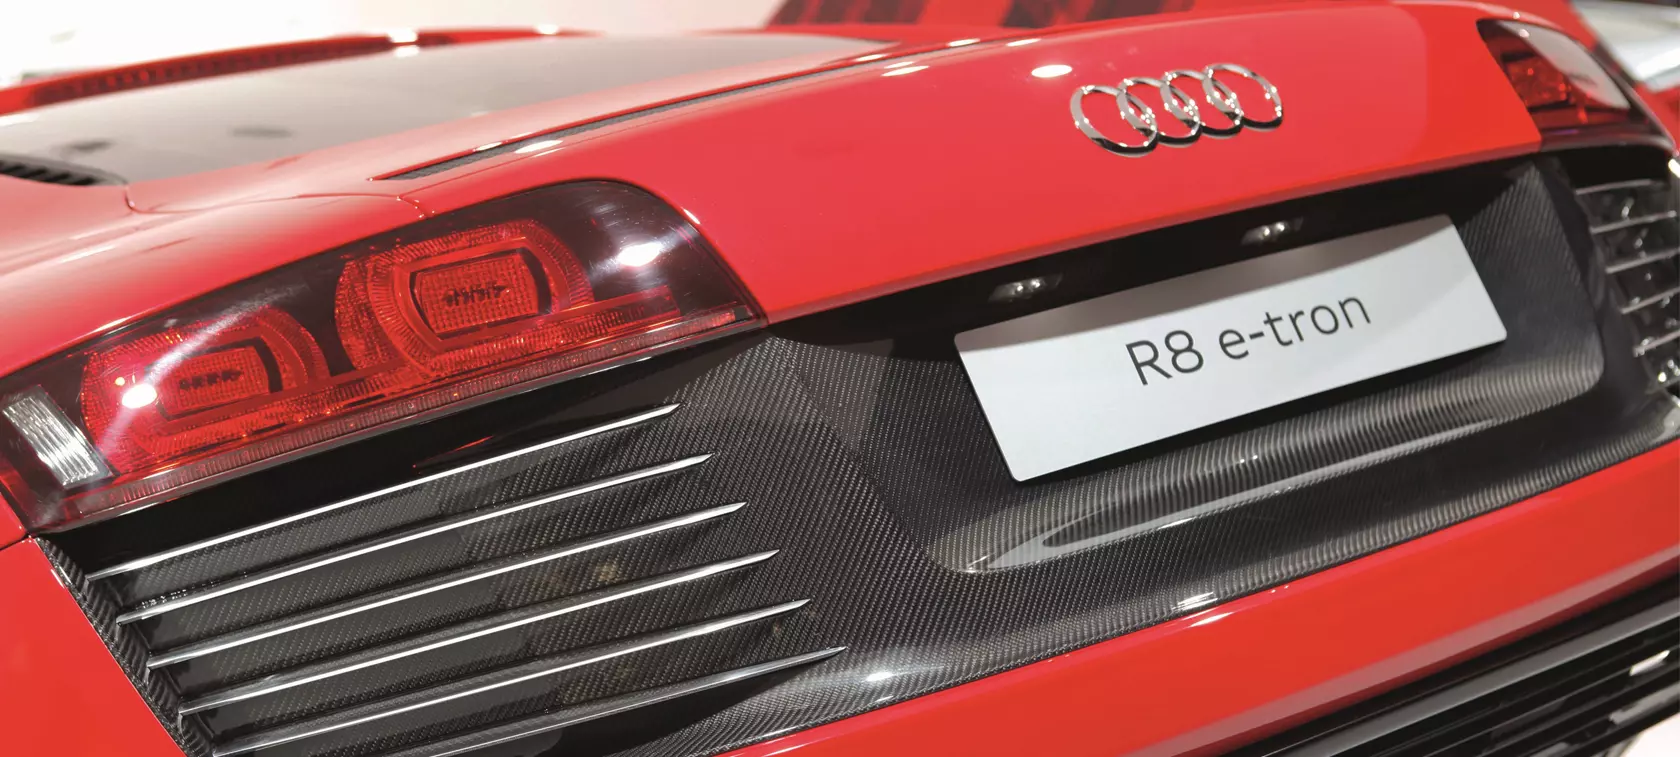 Audi R8 e-tron - niekończąca się opowieść